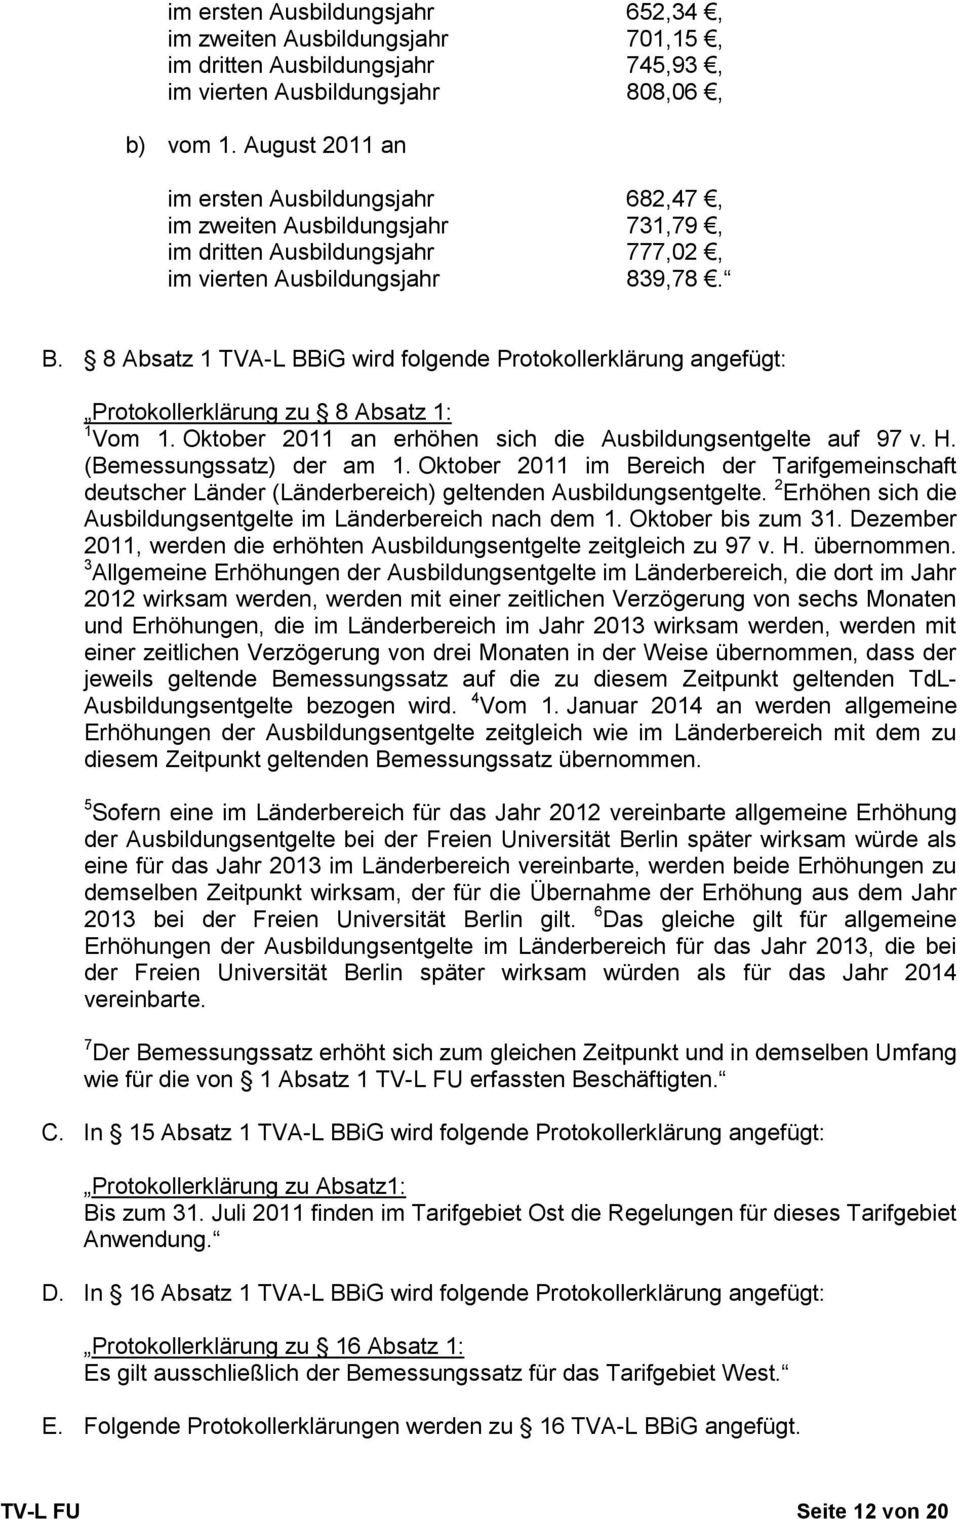 8 Absatz 1 TVA-L BBiG wird folgende Protokollerklärung angefügt: Protokollerklärung zu 8 Absatz 1: 1 Vom 1. Oktober 2011 an erhöhen sich die Ausbildungsentgelte auf 97 v. H. (Bemessungssatz) der am 1.